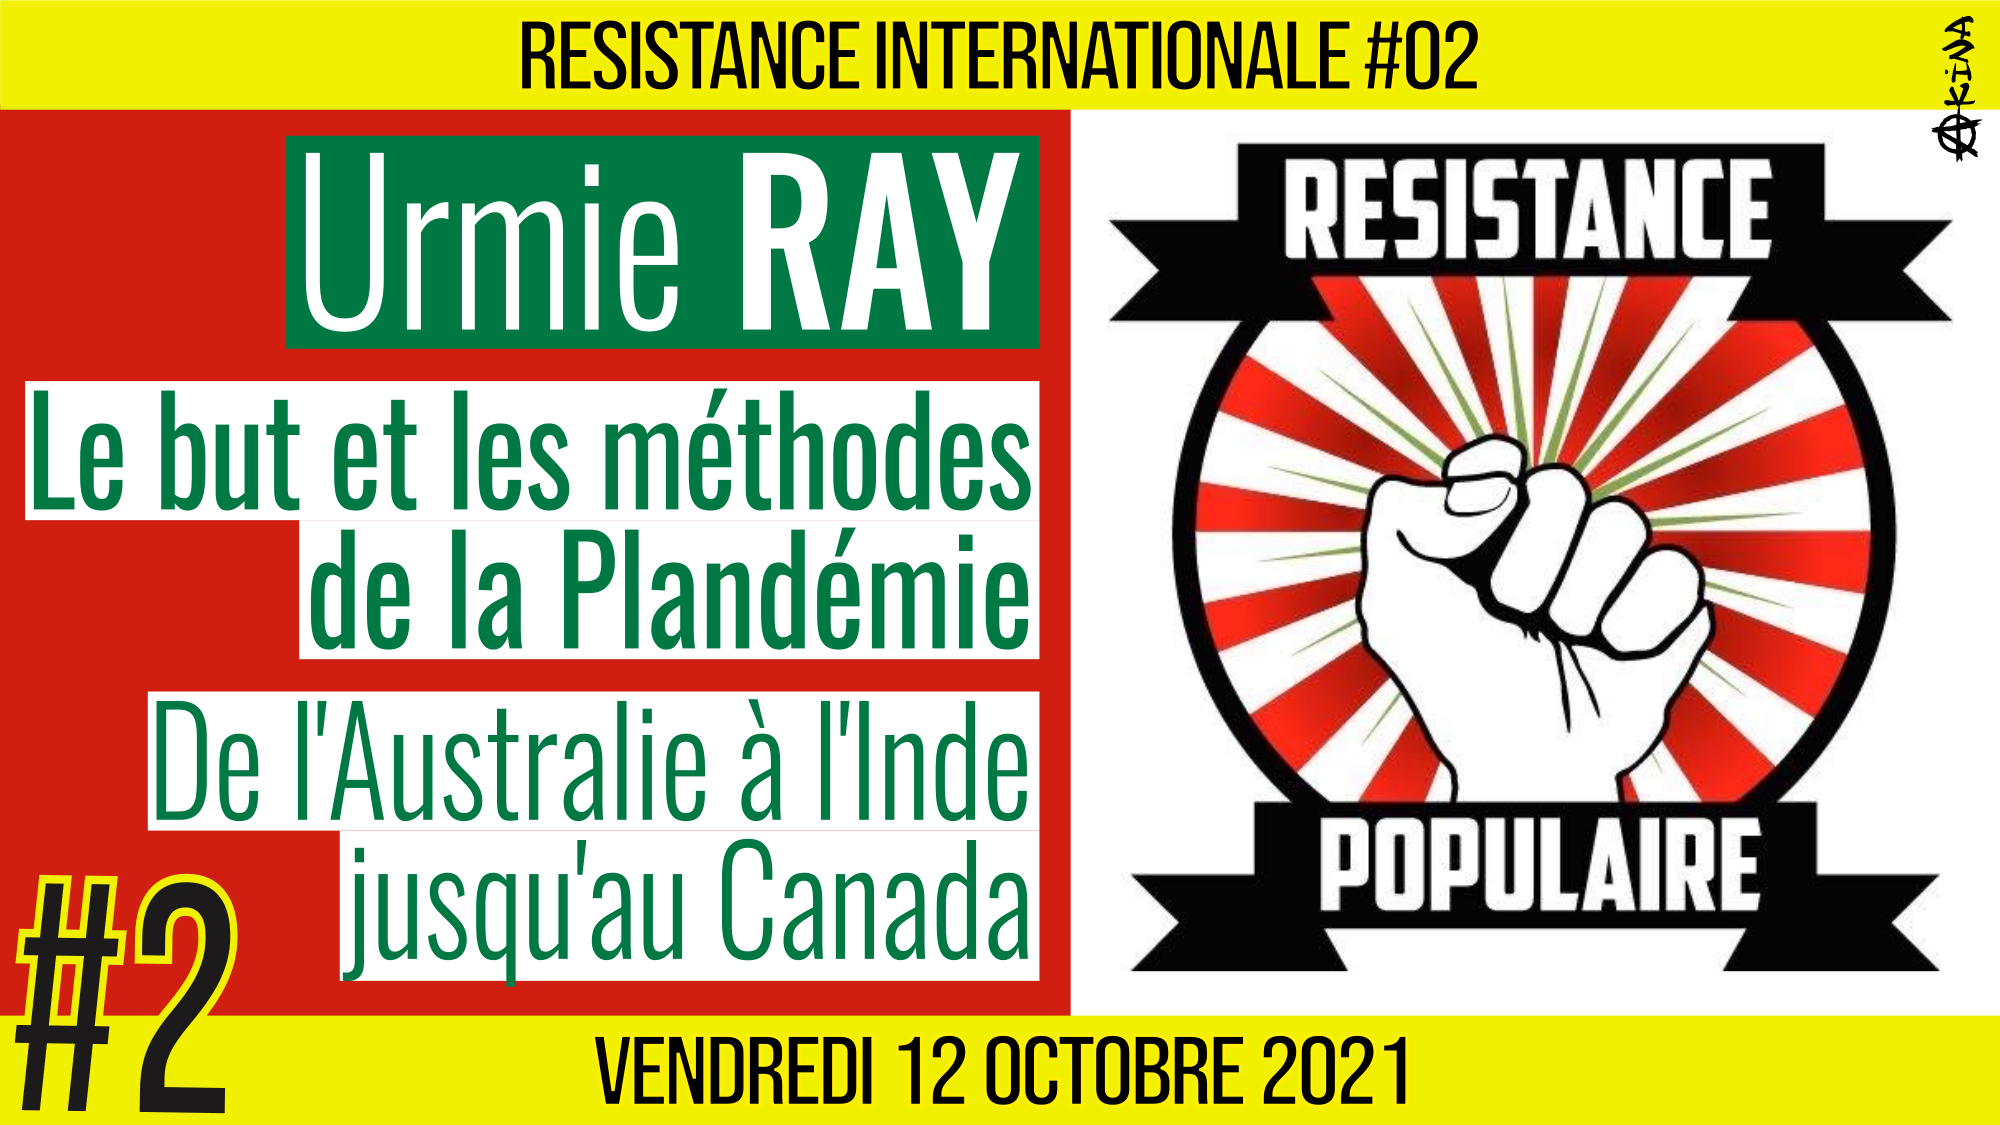 ✊ RÉSISTANCE INTERNATIONALE #02 🗣 Dr. Urmie RAY 🎯 Le but et les méthodes de la plandémie : de l’Australie, à l’Inde en passant par le Canada, les USA… 📆 12-11-2021